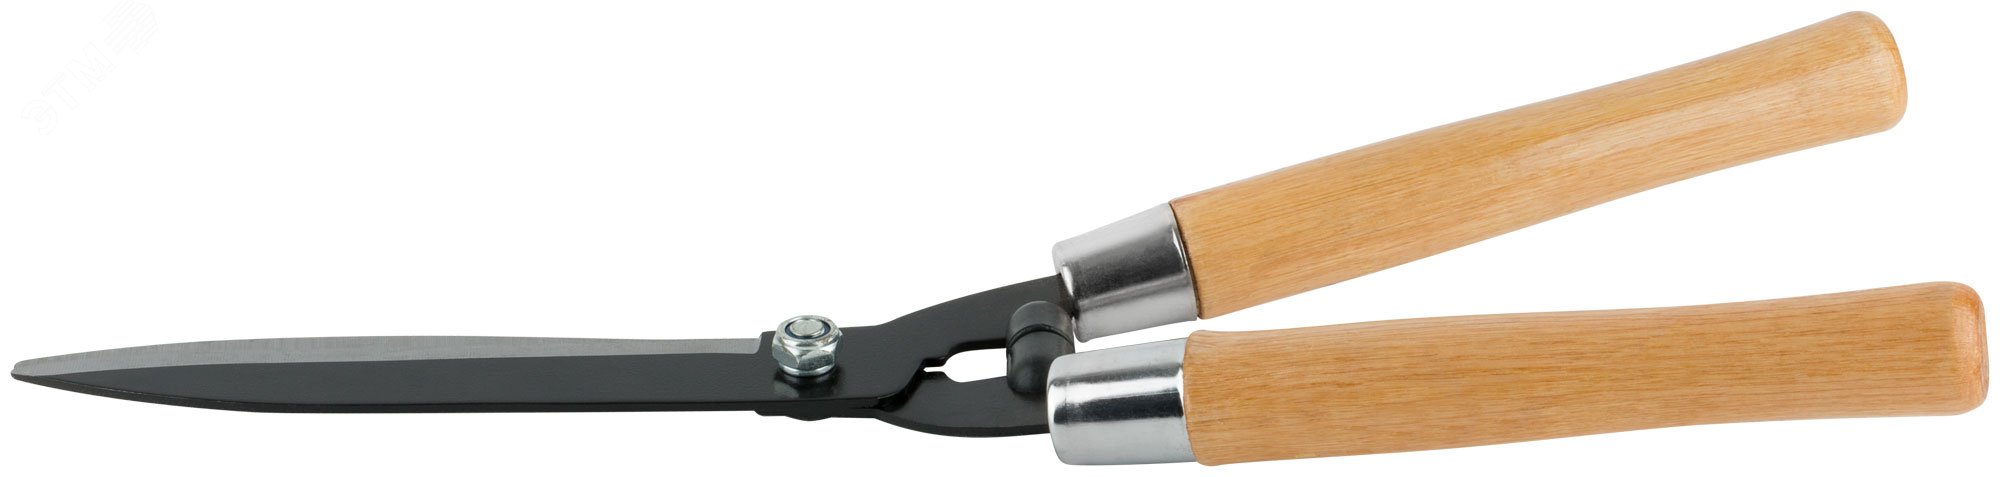 Кусторез, лезвия 200 мм, деревянные ручки 500 мм 76281 КУРС - превью 4